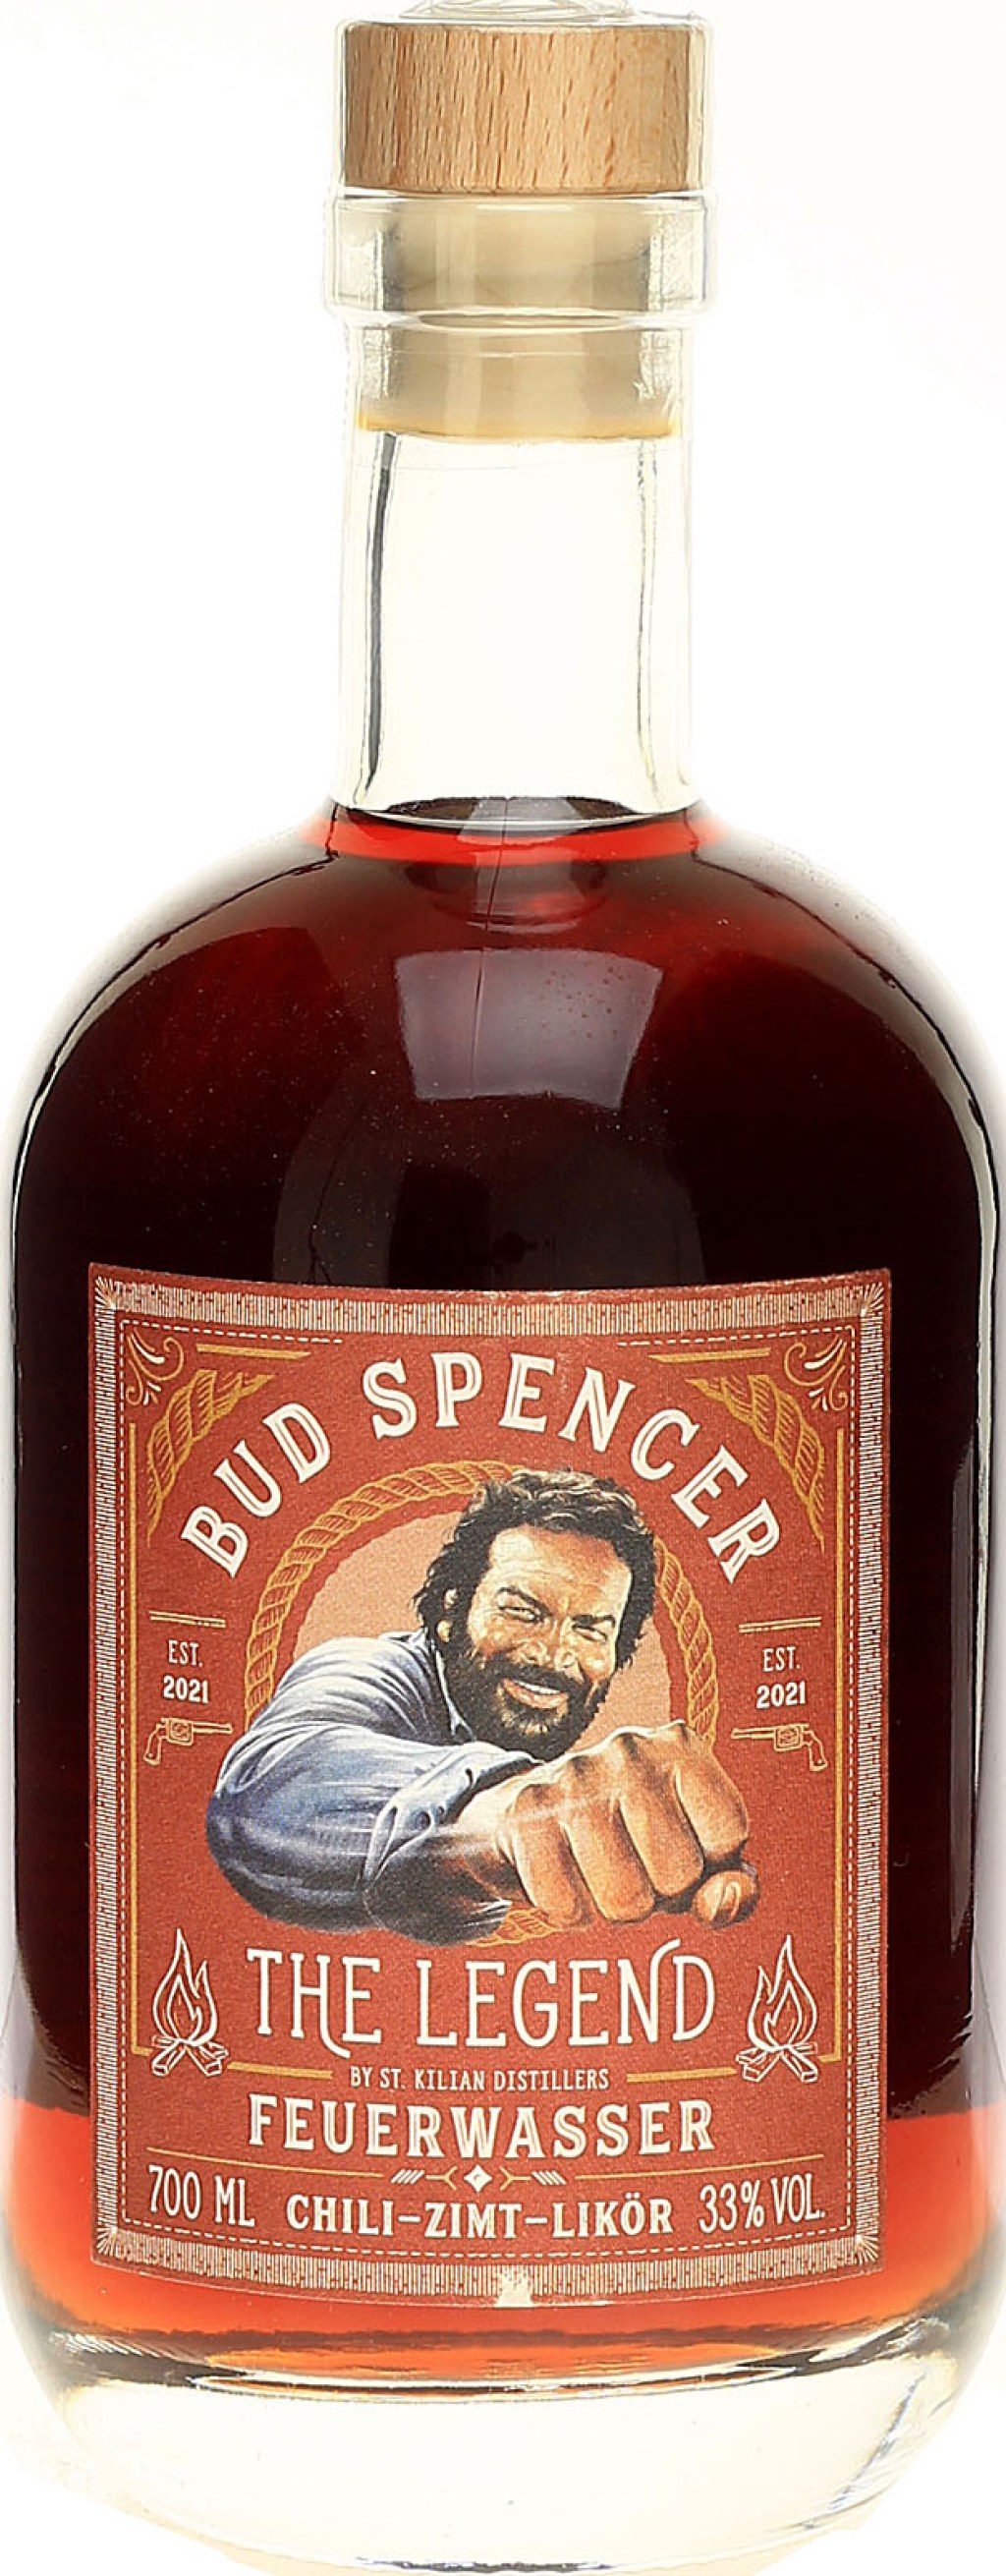 Picture of: Bud Spencer The Legend Feuerwasser , Liter  % Vol.